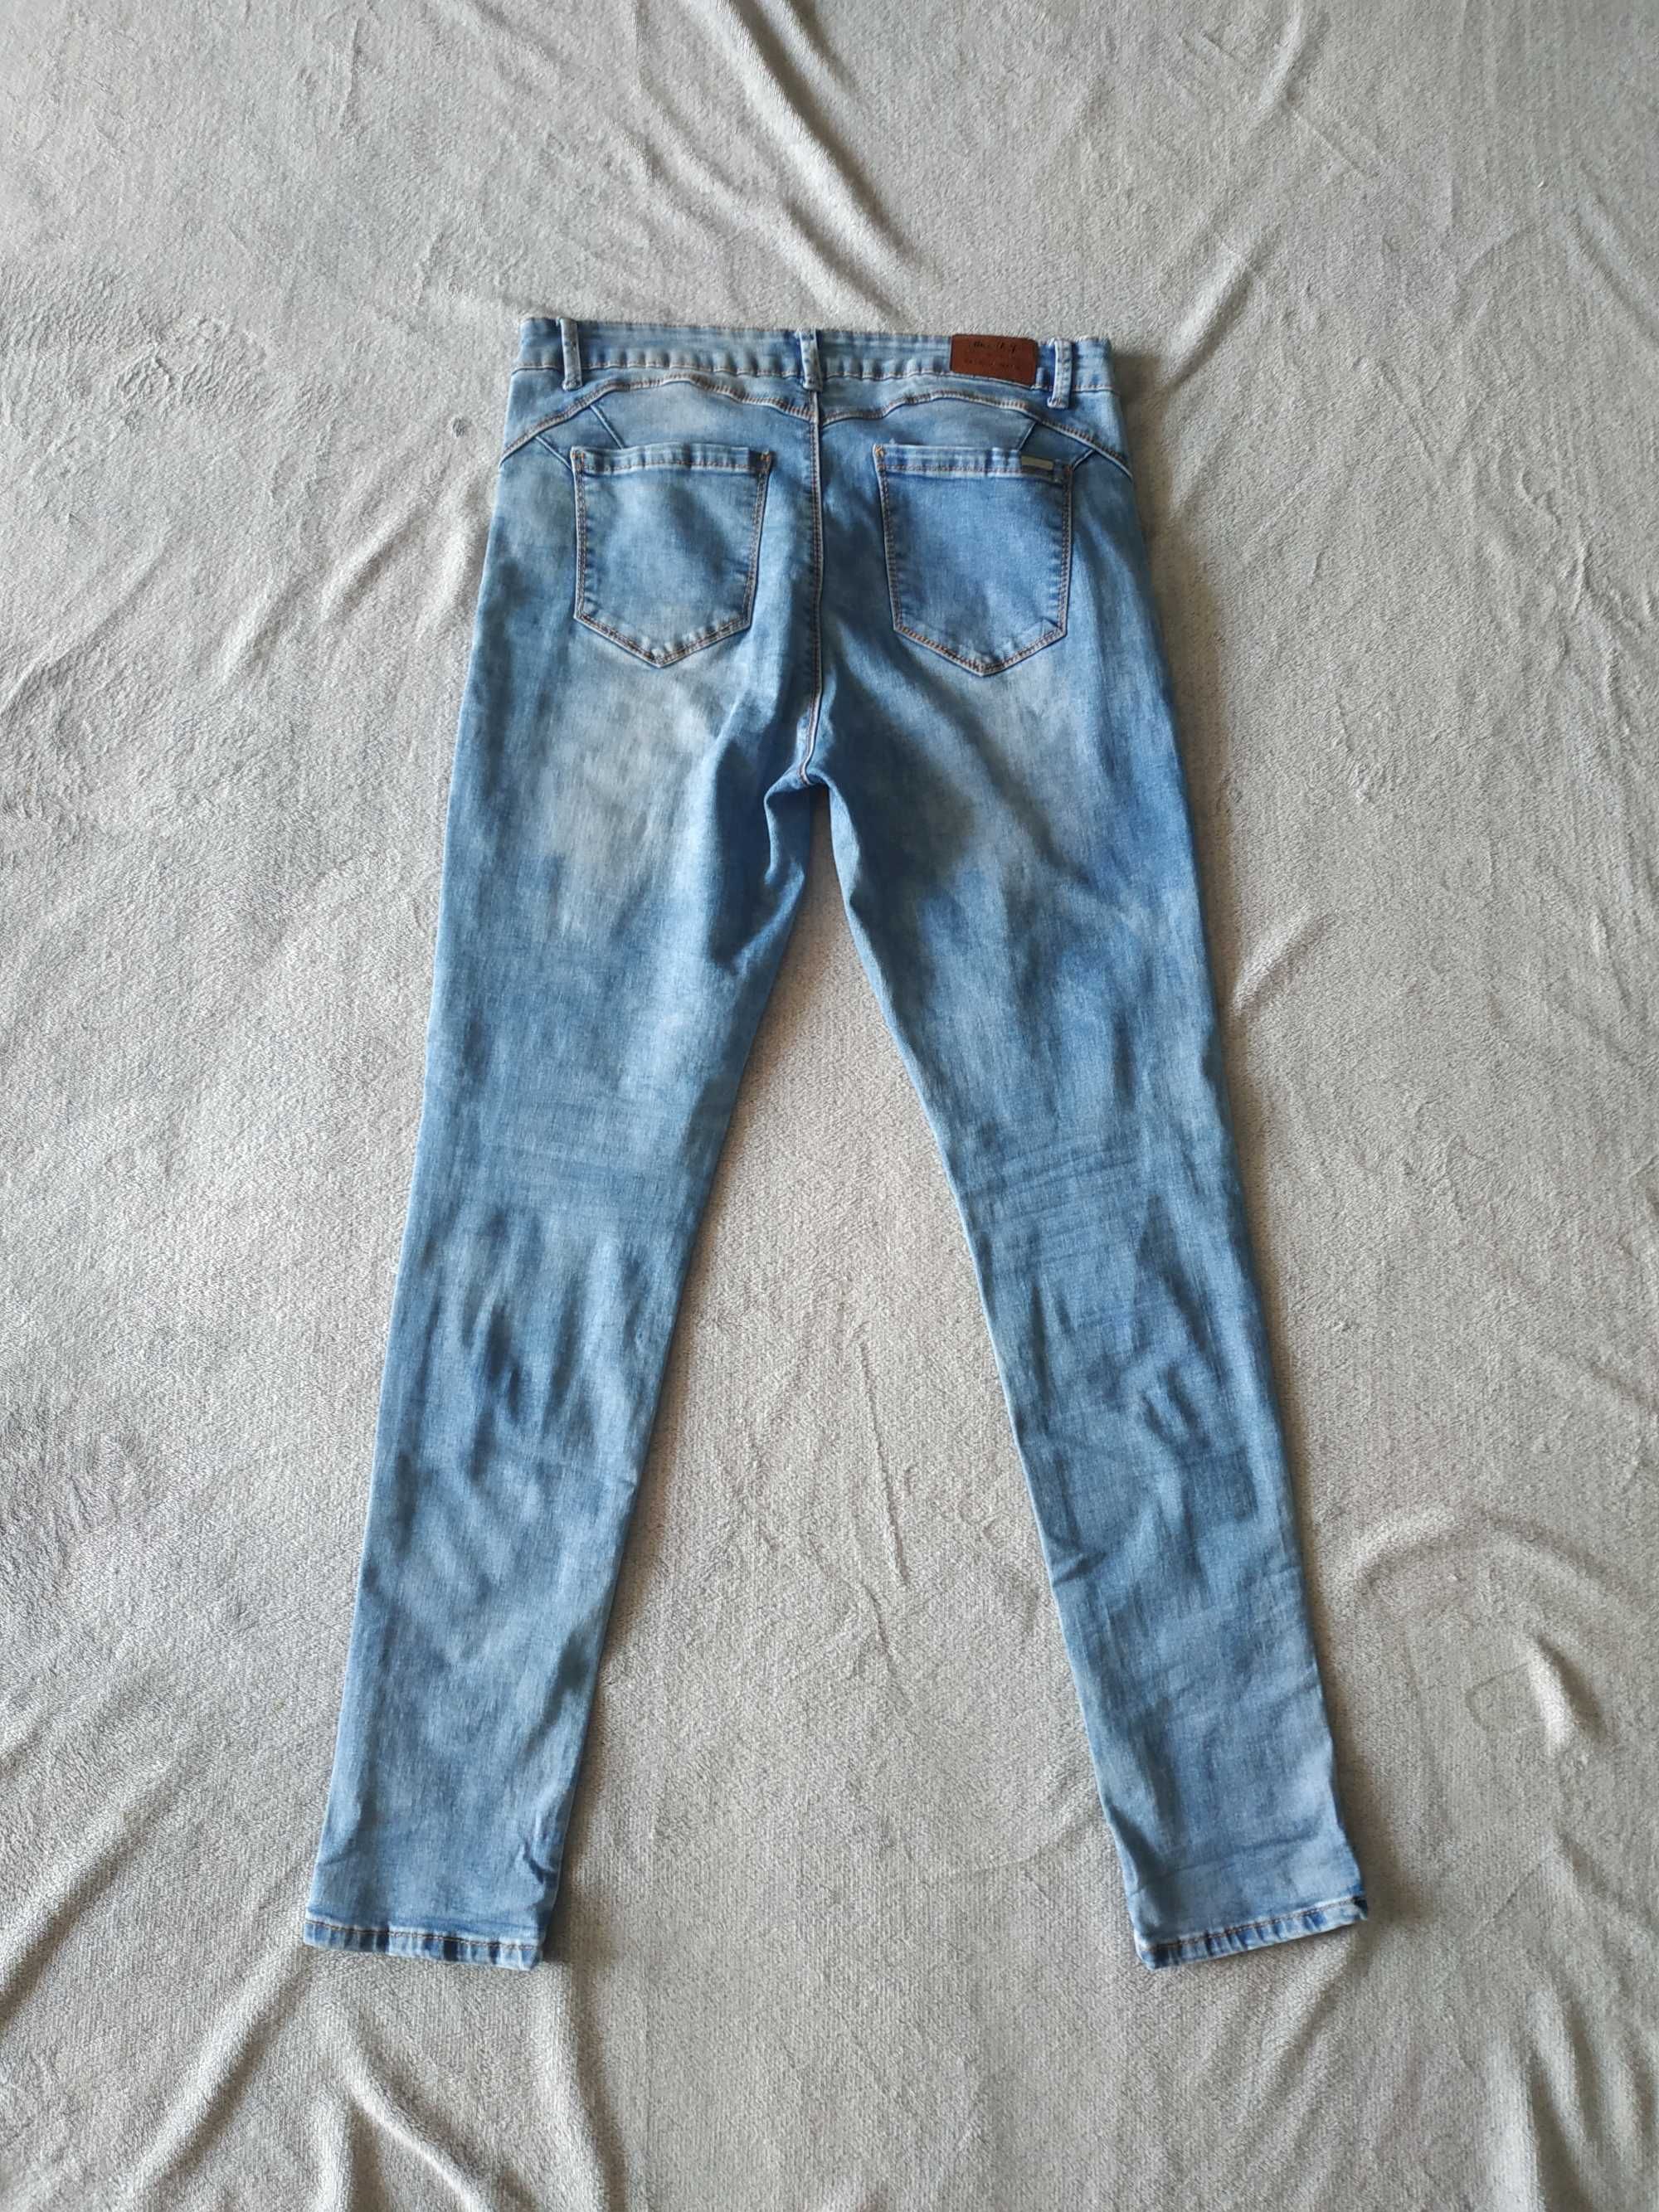 Spodnie damskie jasny dżins jeans